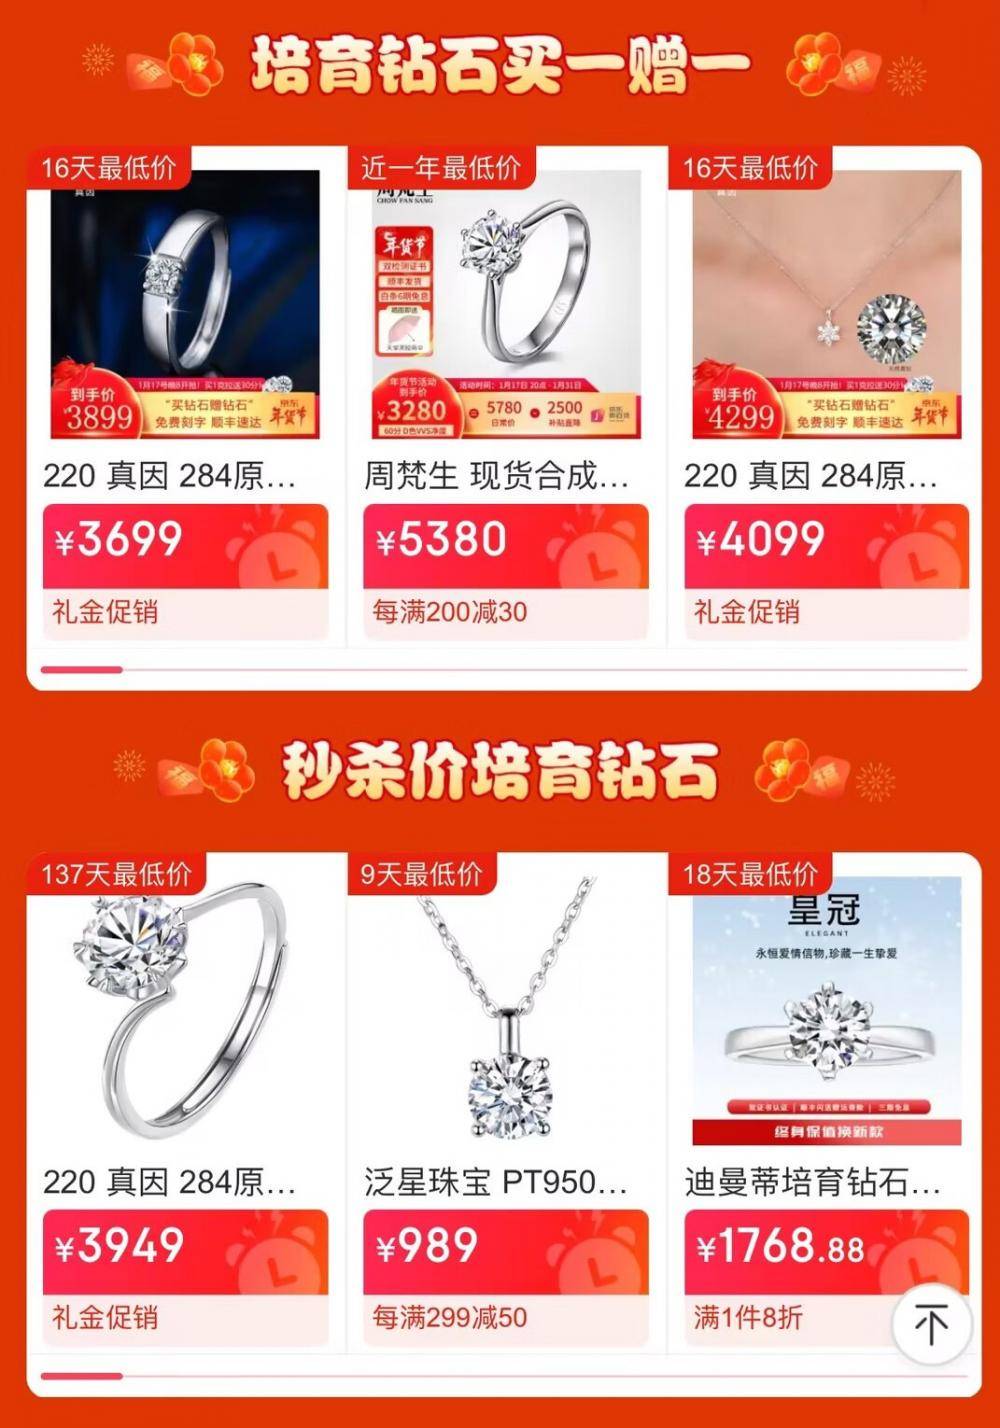 洛阳文旅赠送的培育钻石在京东销售火爆 年成交量同比增长150%